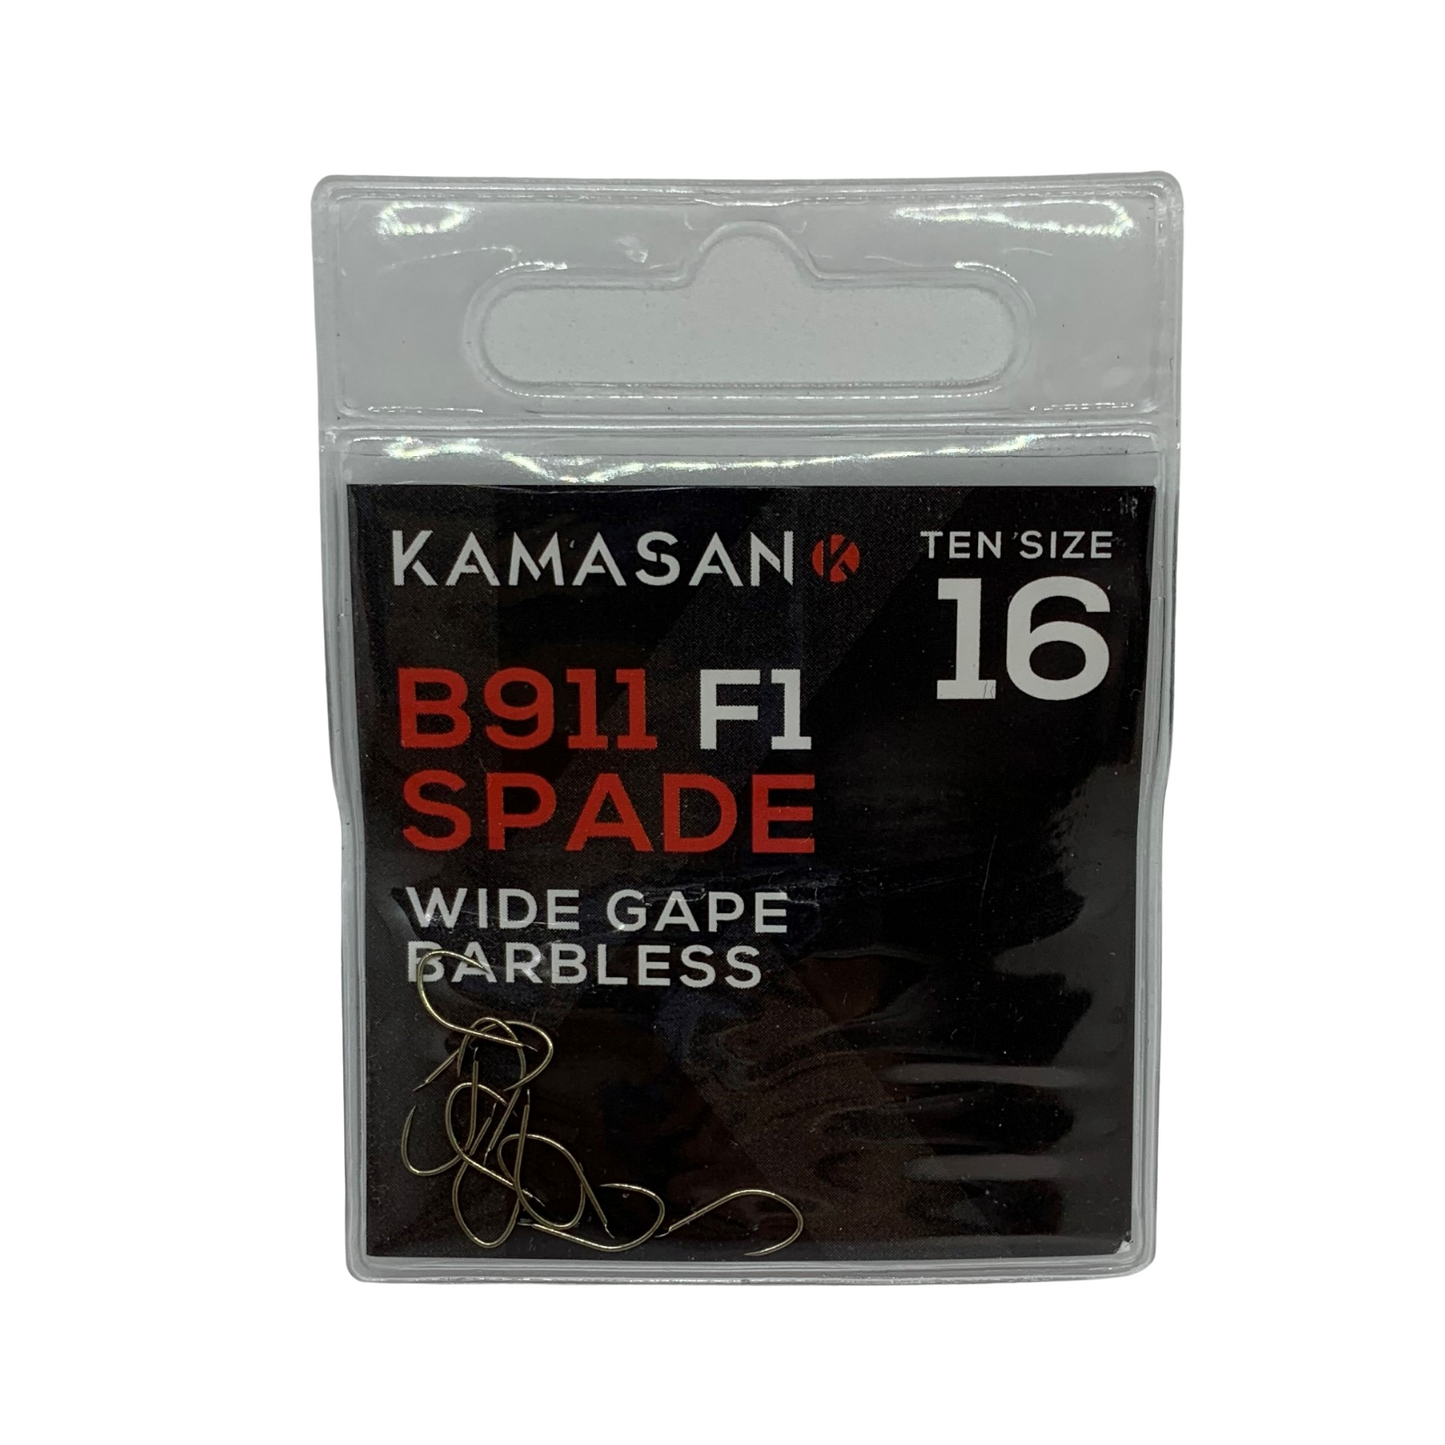 Kamasan B911 F1 Spade End Hooks - Size 16